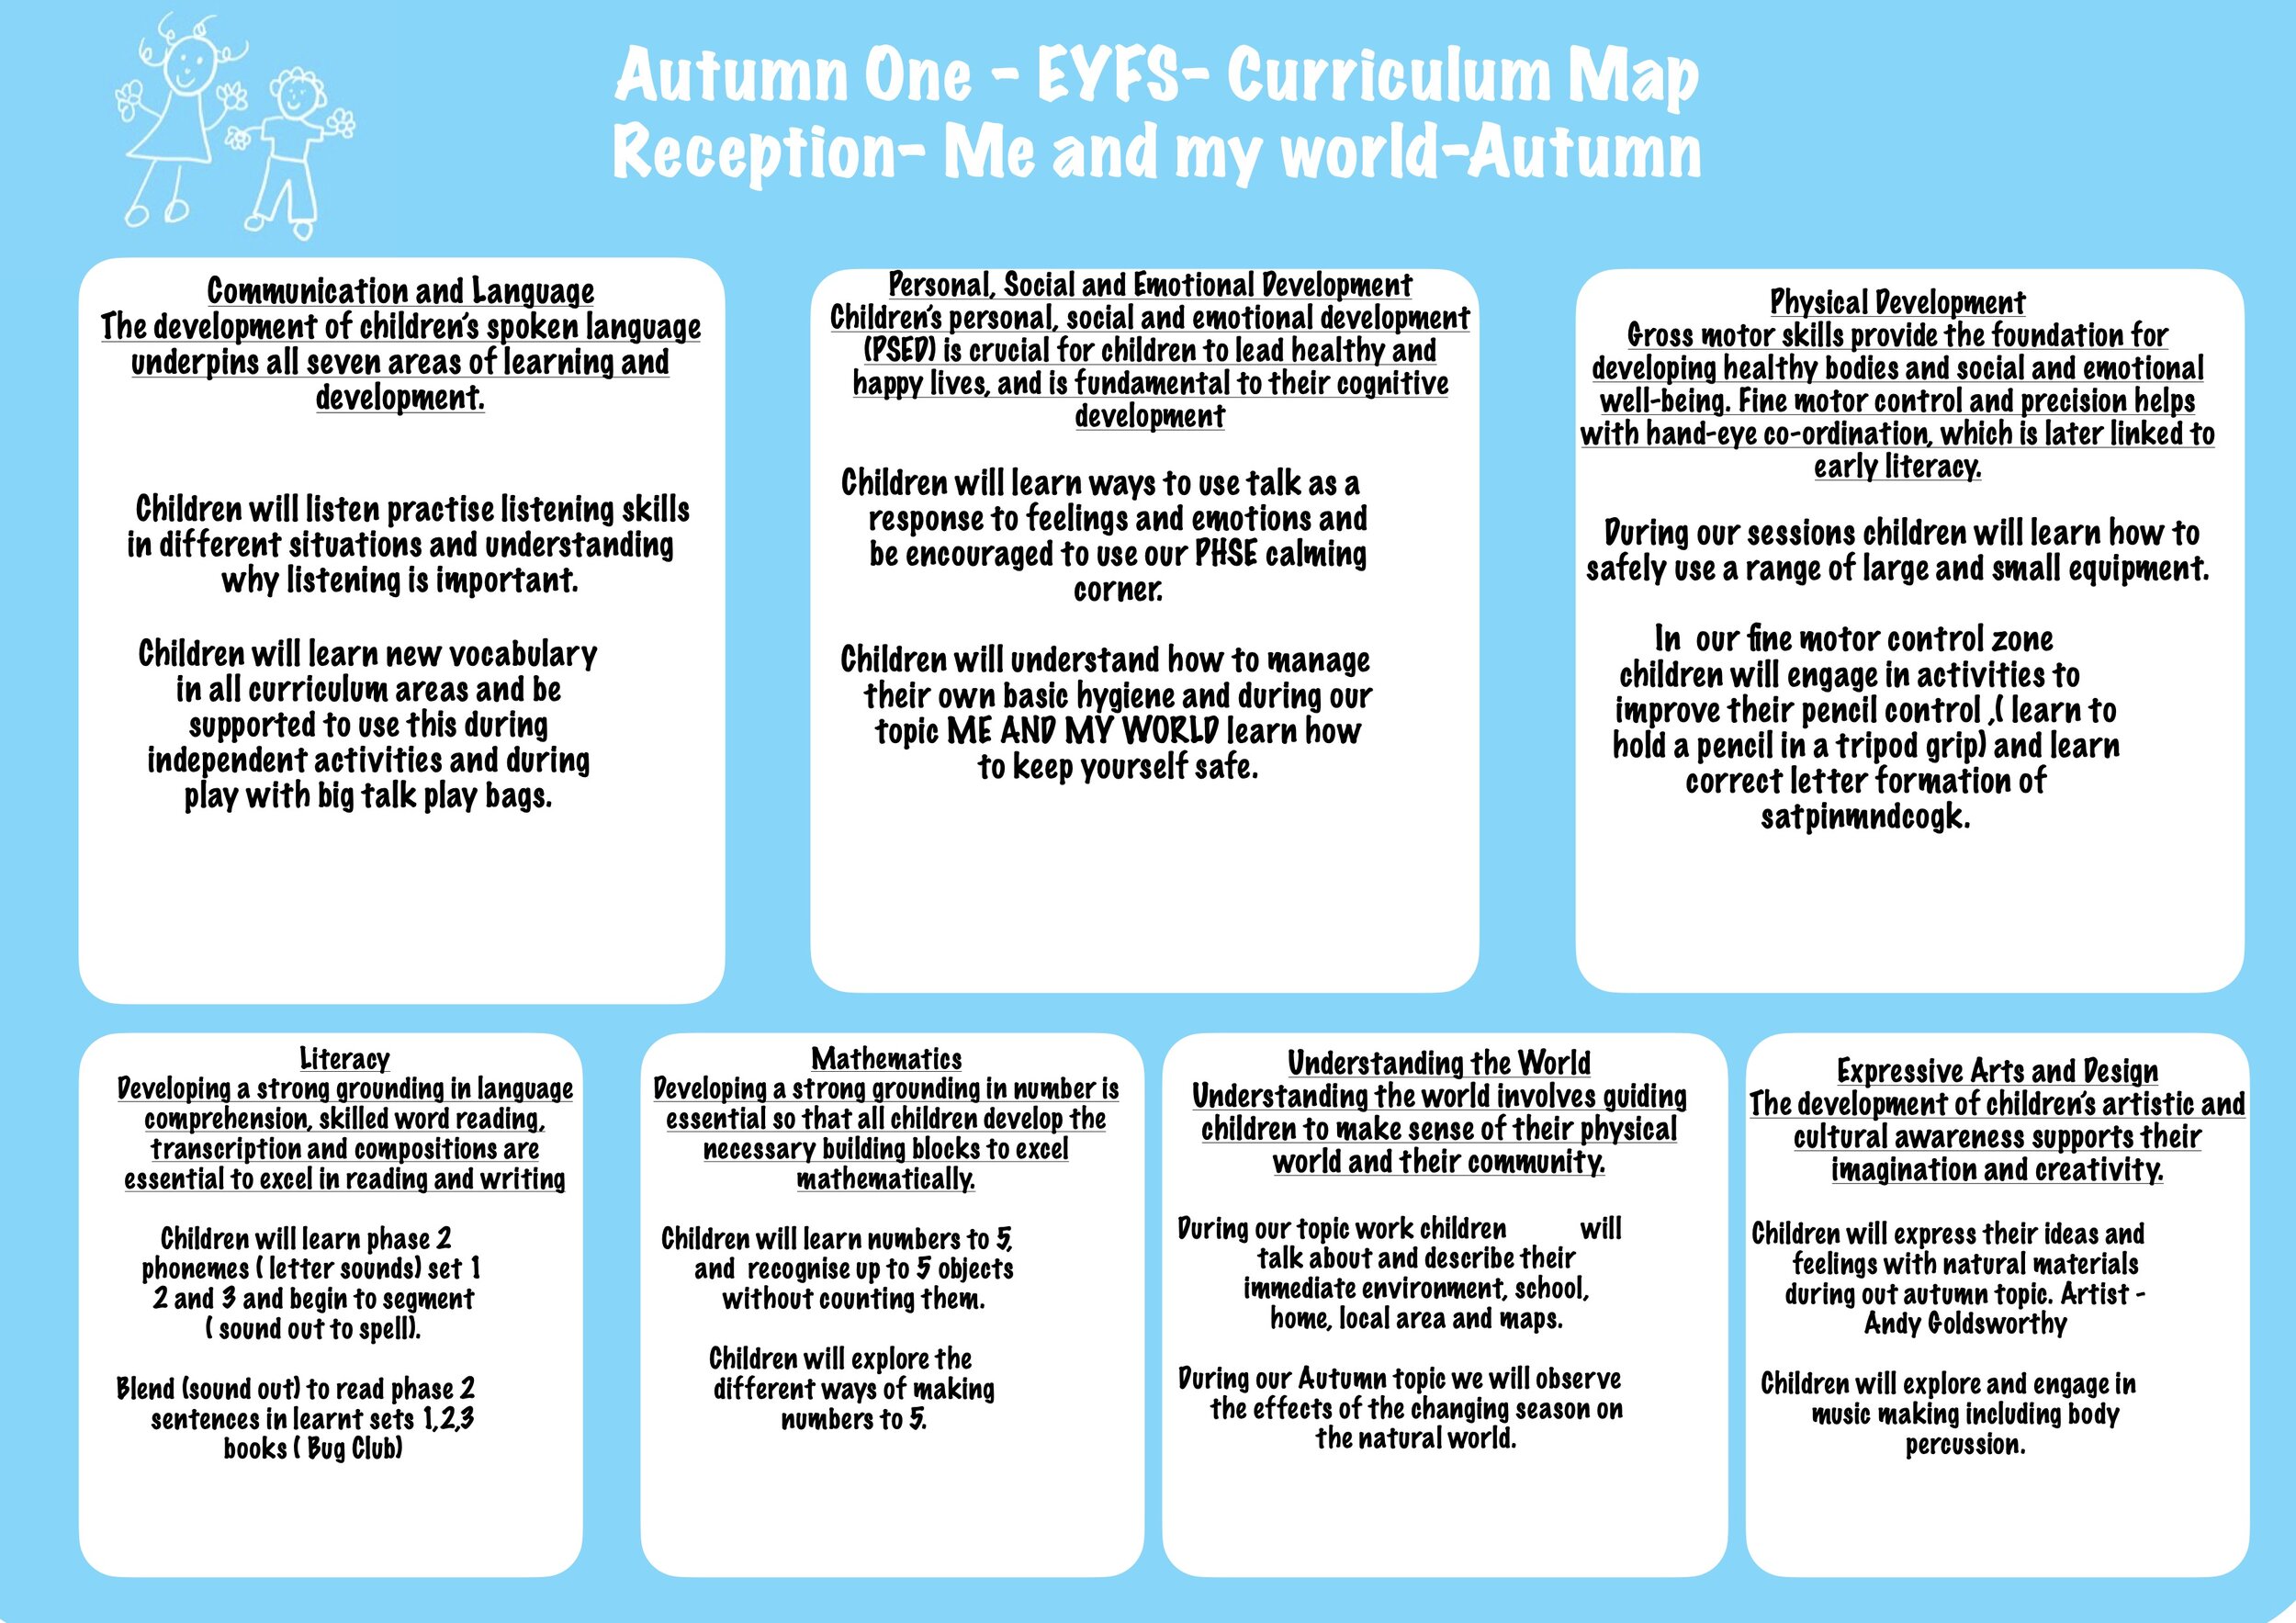 Website curriculum map - Reception.jpg